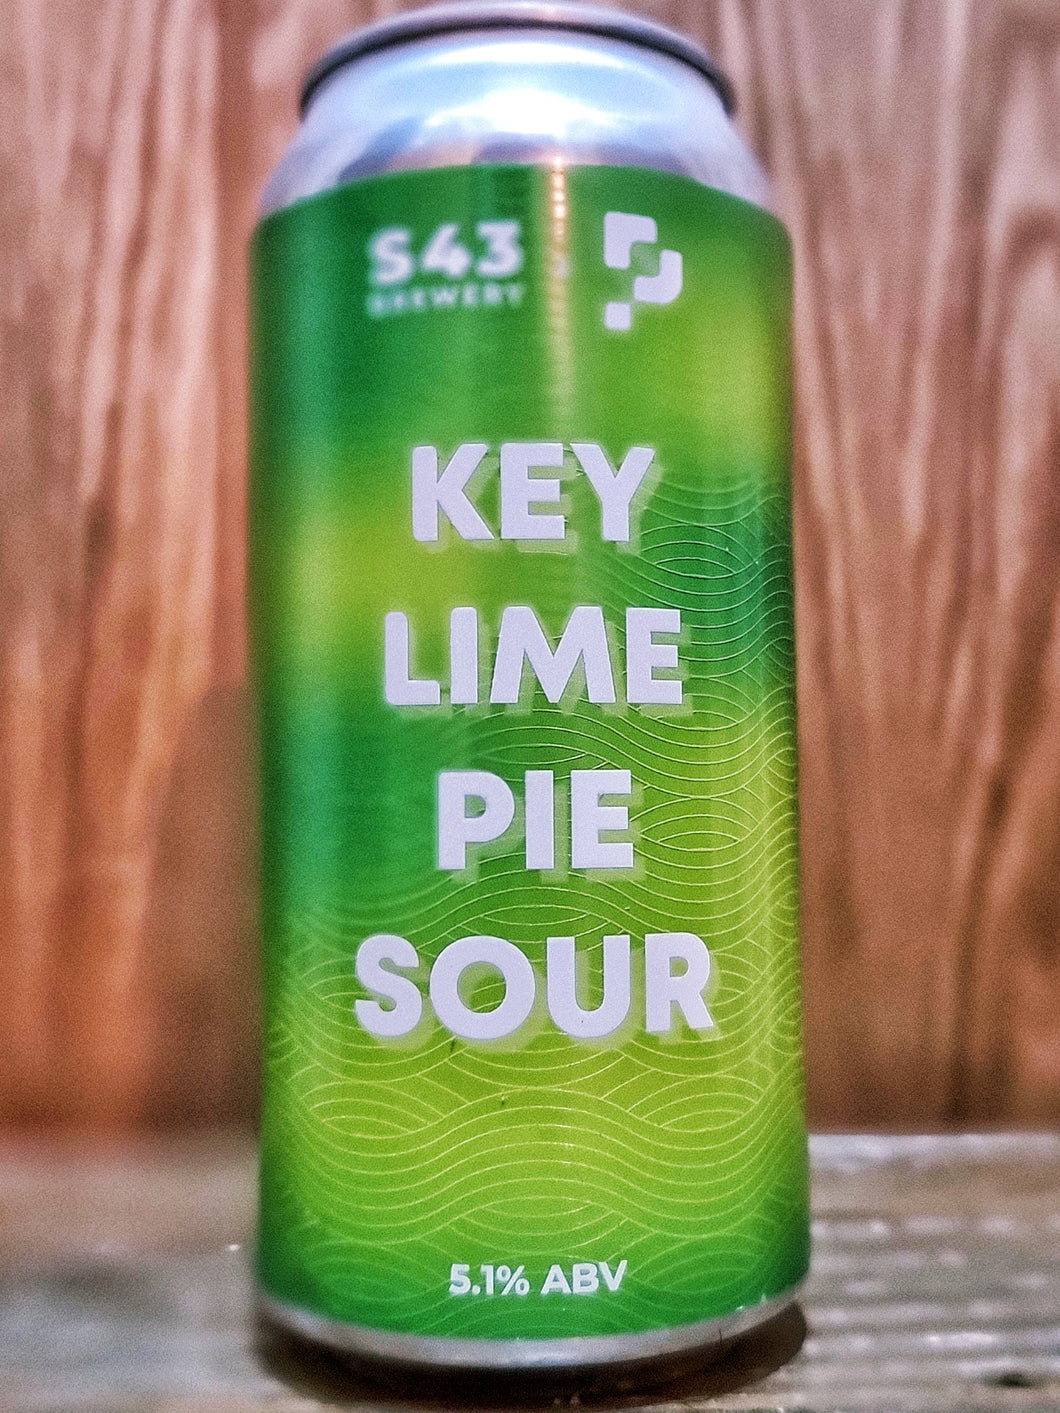 S43 v Play Brew - Key Lime Pie Sour